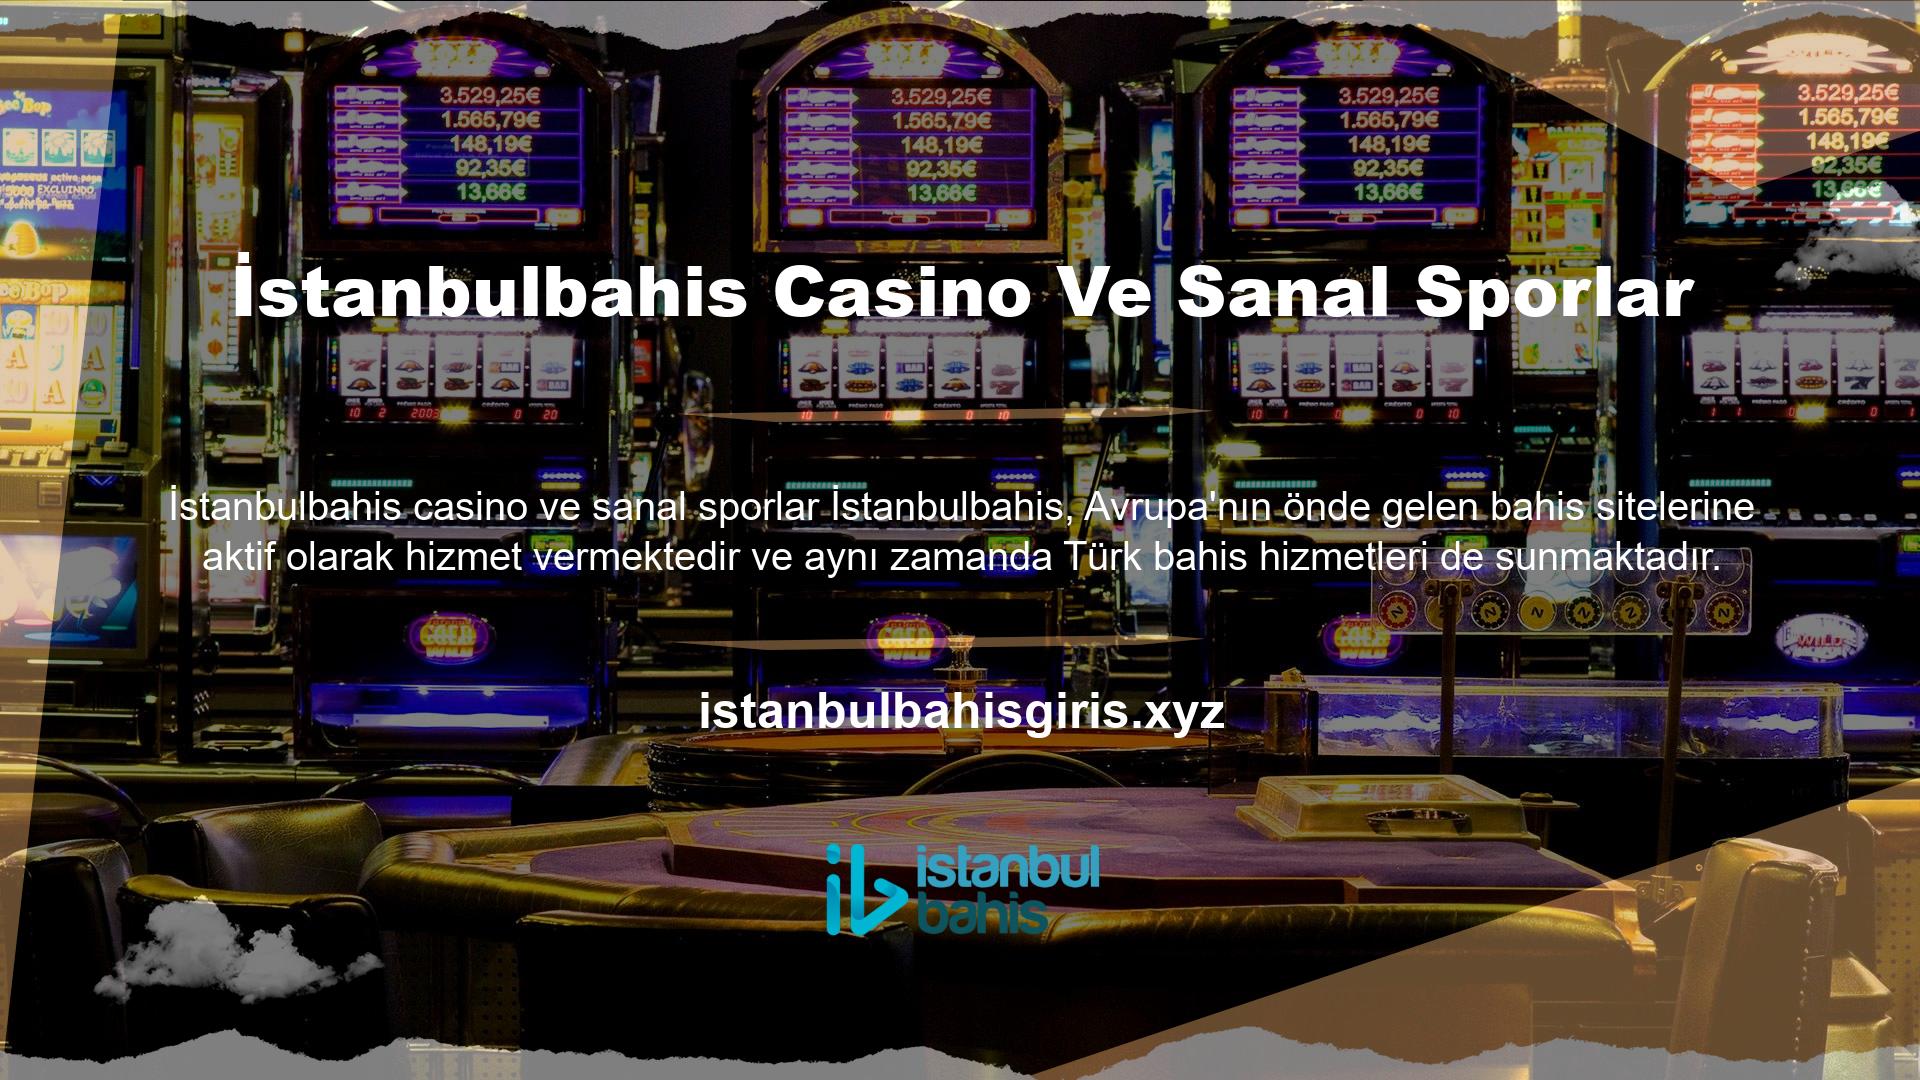 Spor veya canlı bahis dahil olmak üzere casinolar, sanal sporlar, canlı casinolar veya bingo hizmetleri sunan web siteleri